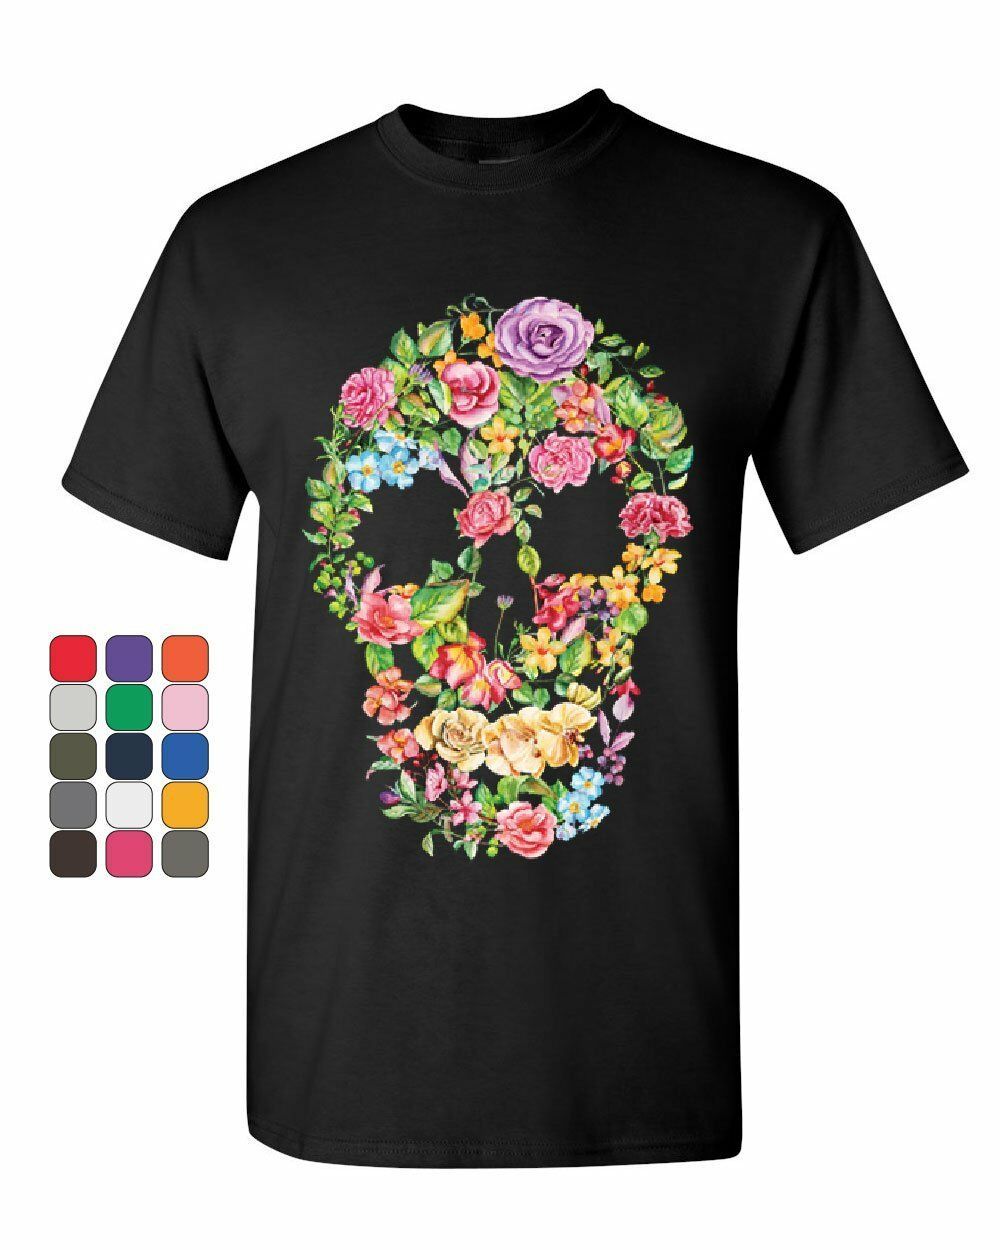 Flower Skull T-Shirt Sugar Skull Calavera Dia de los Muertos Mens Tee Shirt